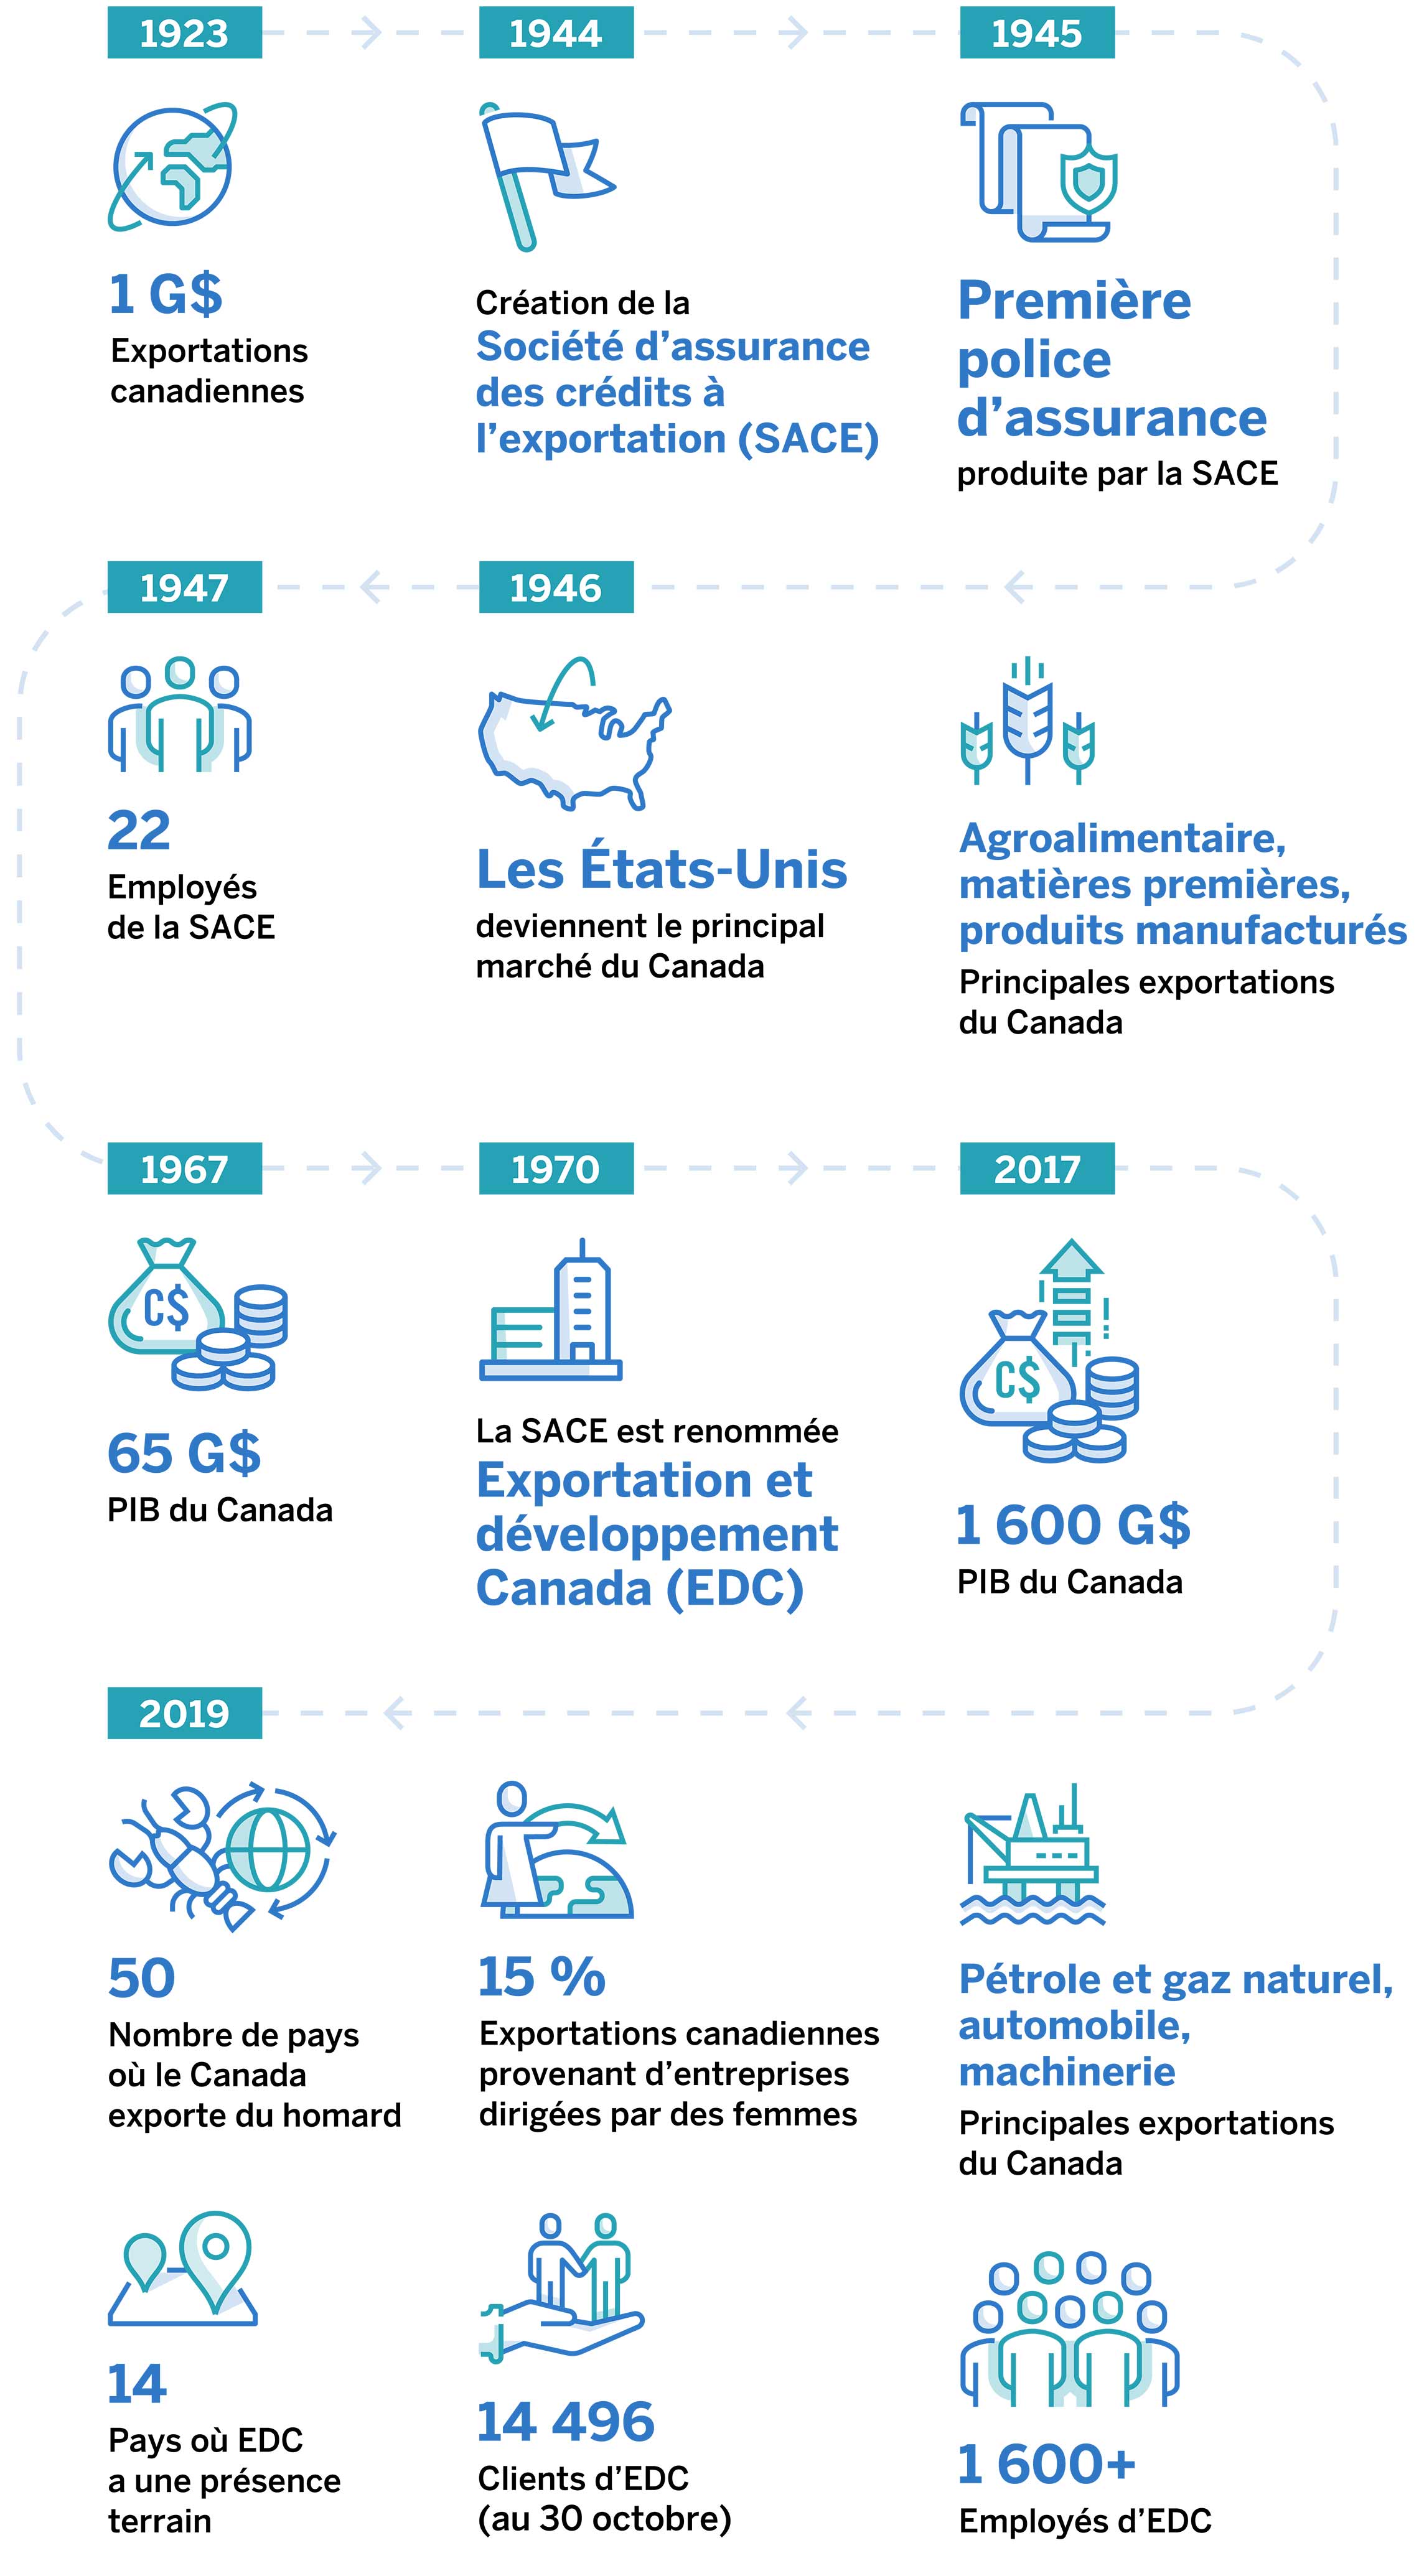 EDC et les exportateurs canadiens : 75 ans de partenariat